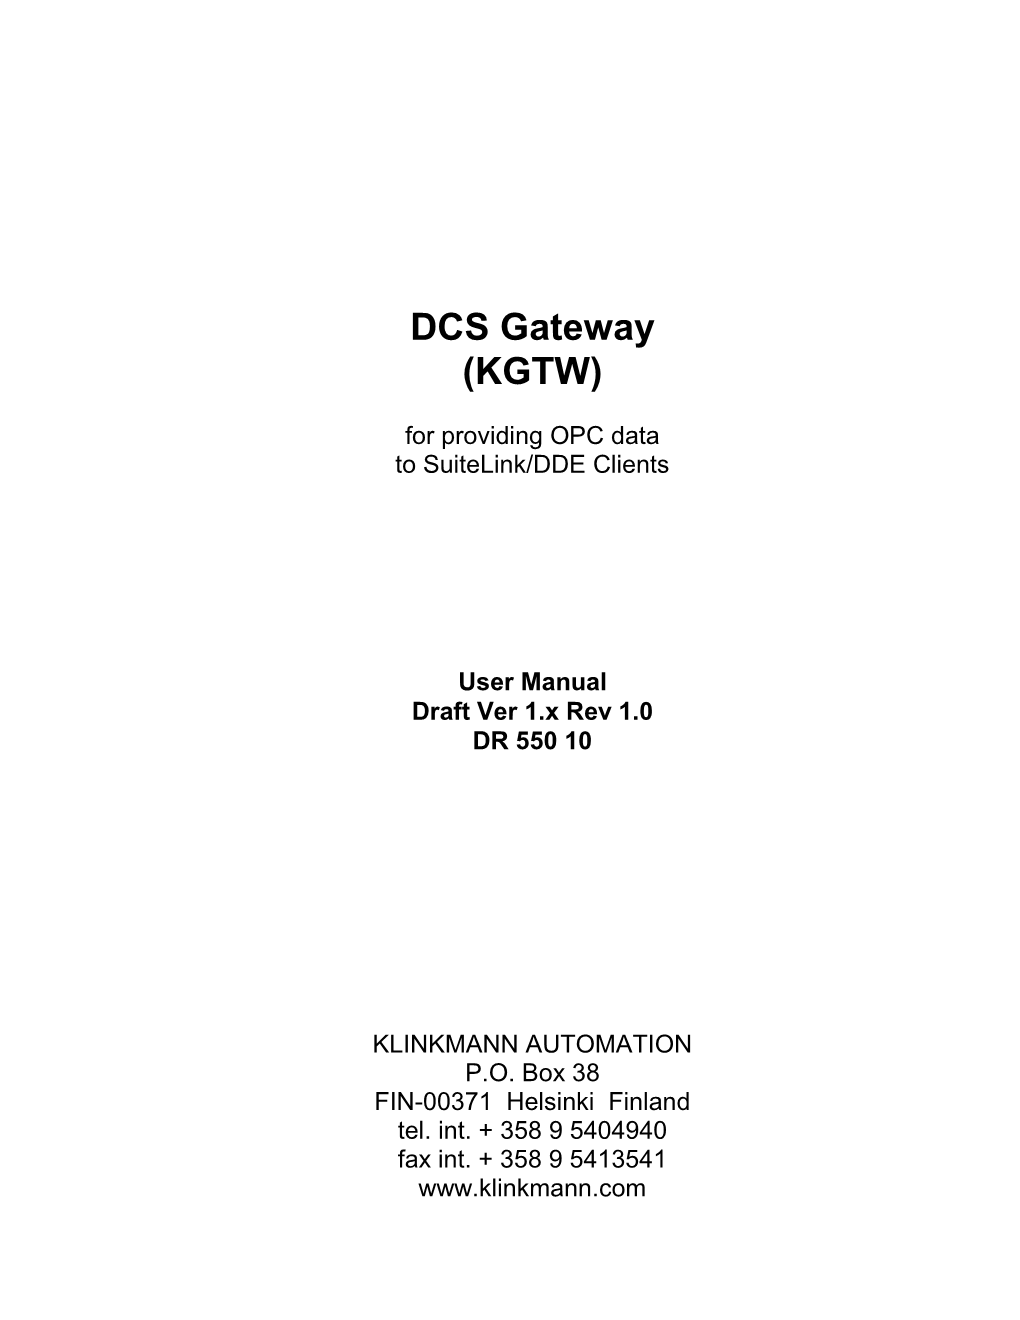 DCS Gateway (KGTW)